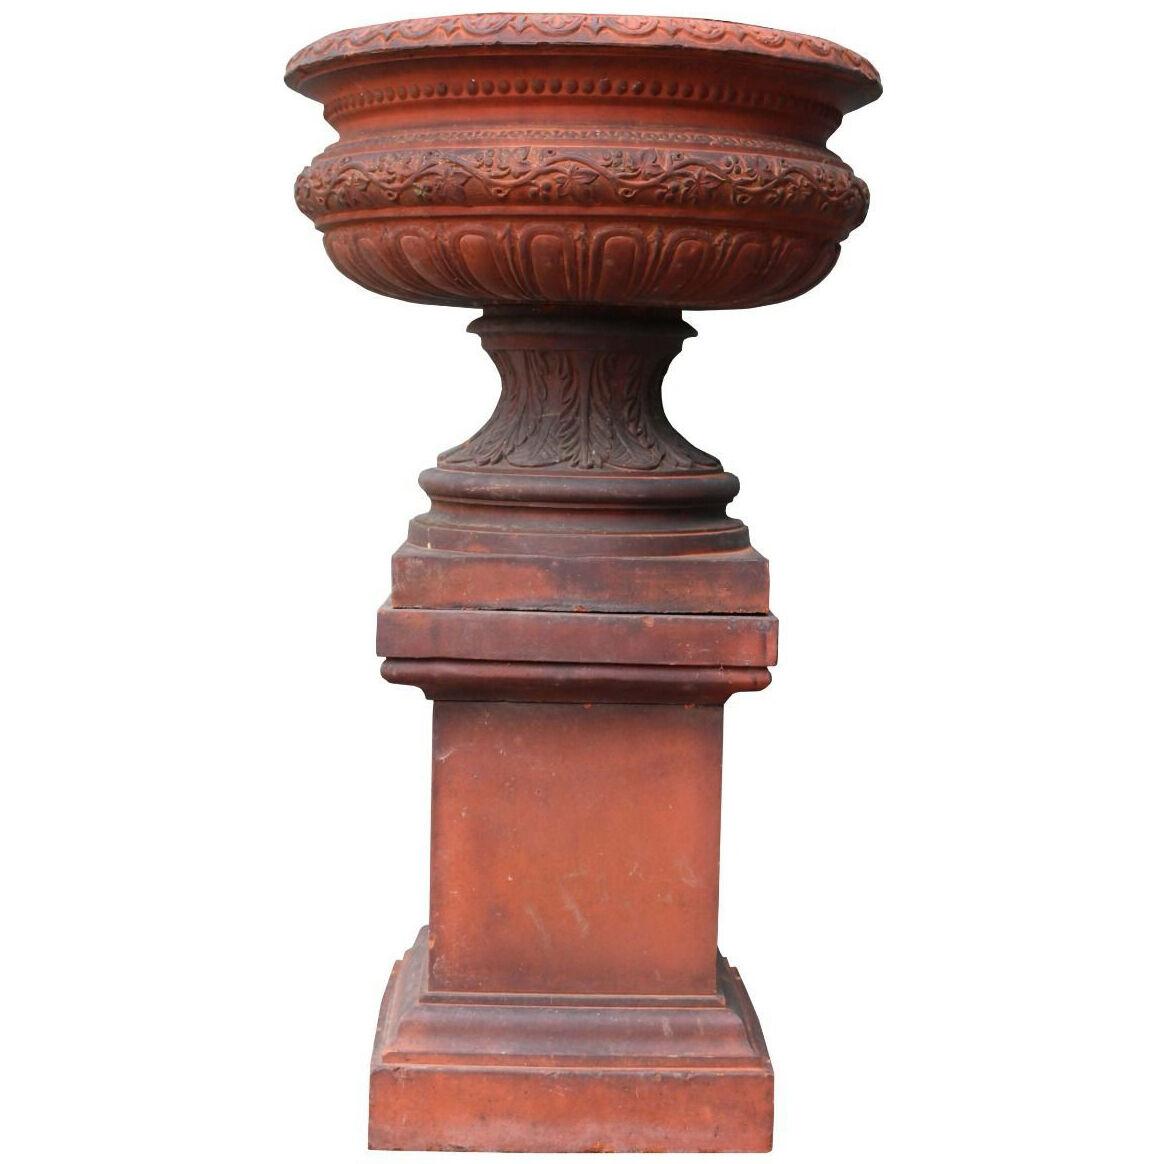 An Antique Terracotta Garden Urn Centerpiece